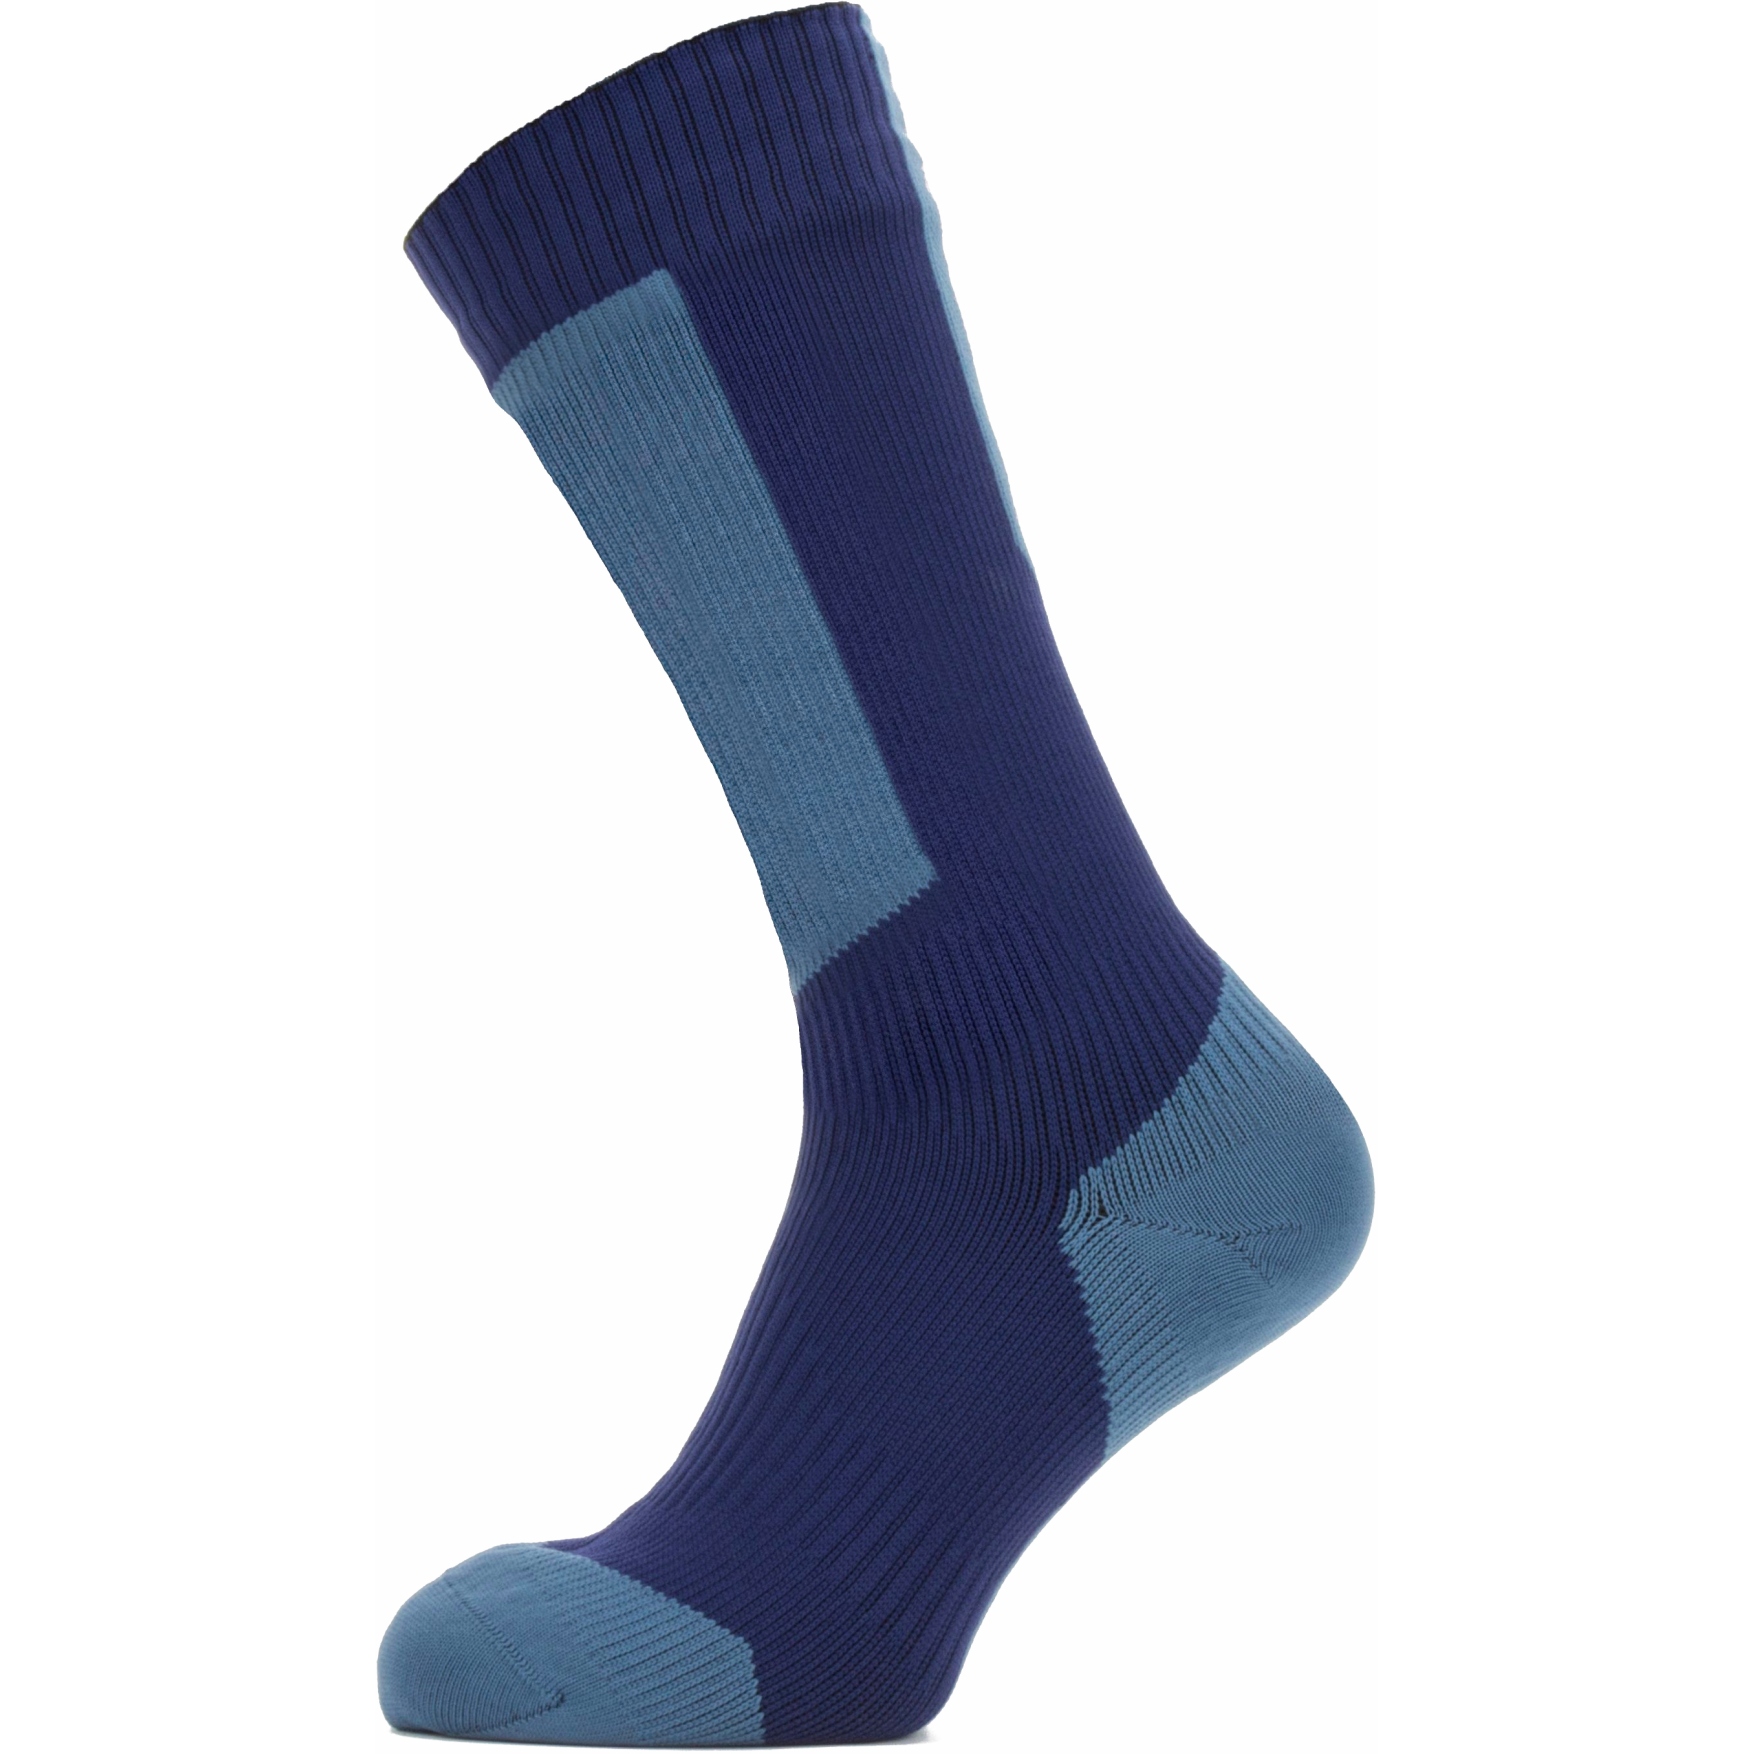 Productfoto van SealSkinz Runton Waterdichte Halflange Sokken Voor Koud Weer met Hydrostop - Navy Blue/Red